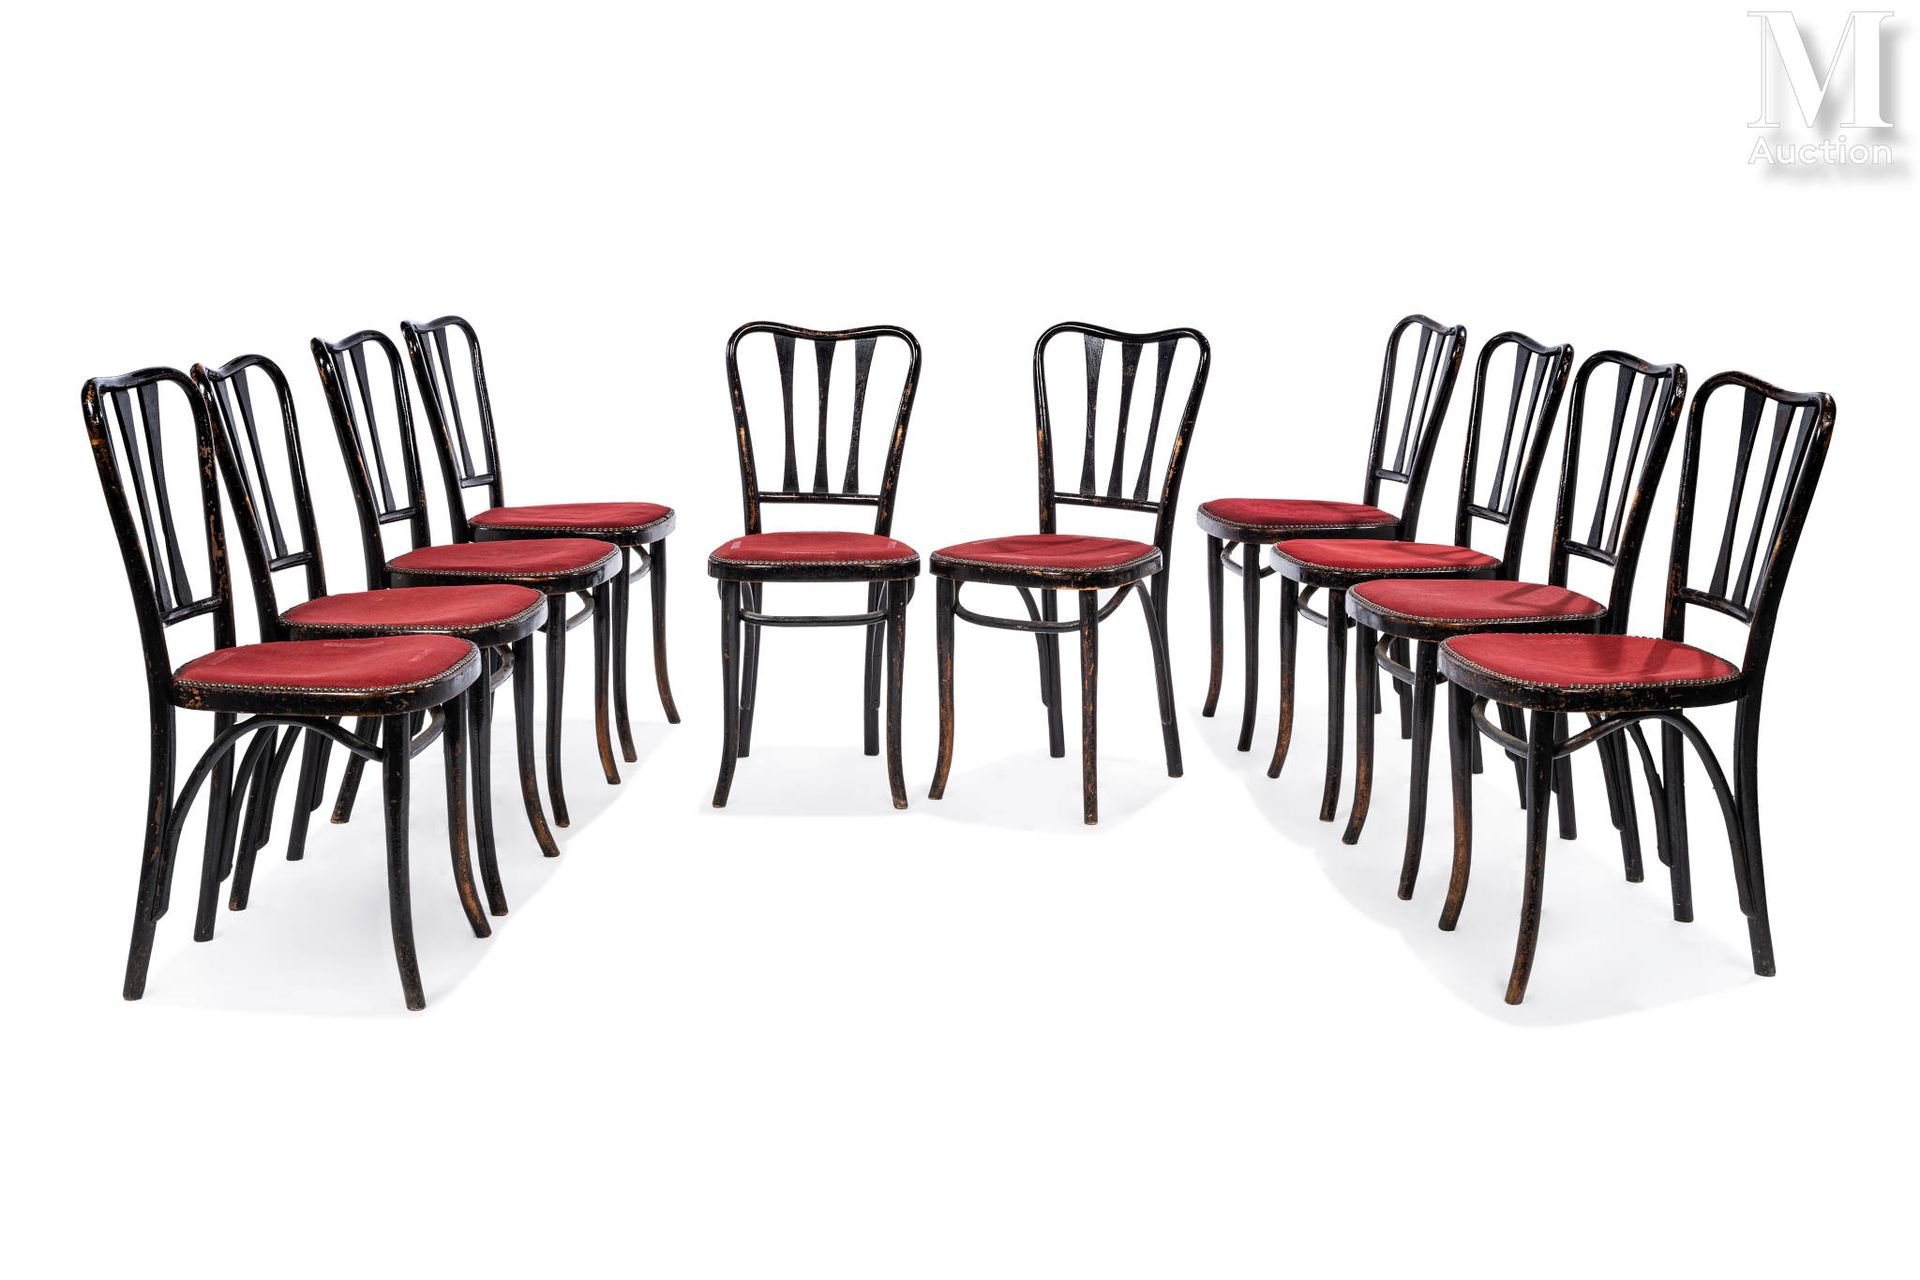 THONET 一套10把黑色漆面木椅，椅背为镂空，椅腿为弧形。座椅上覆盖着红色织物。

座椅栏杆下的出版商的标签。

88 x 40 x 42 厘米

(磨损)&hellip;